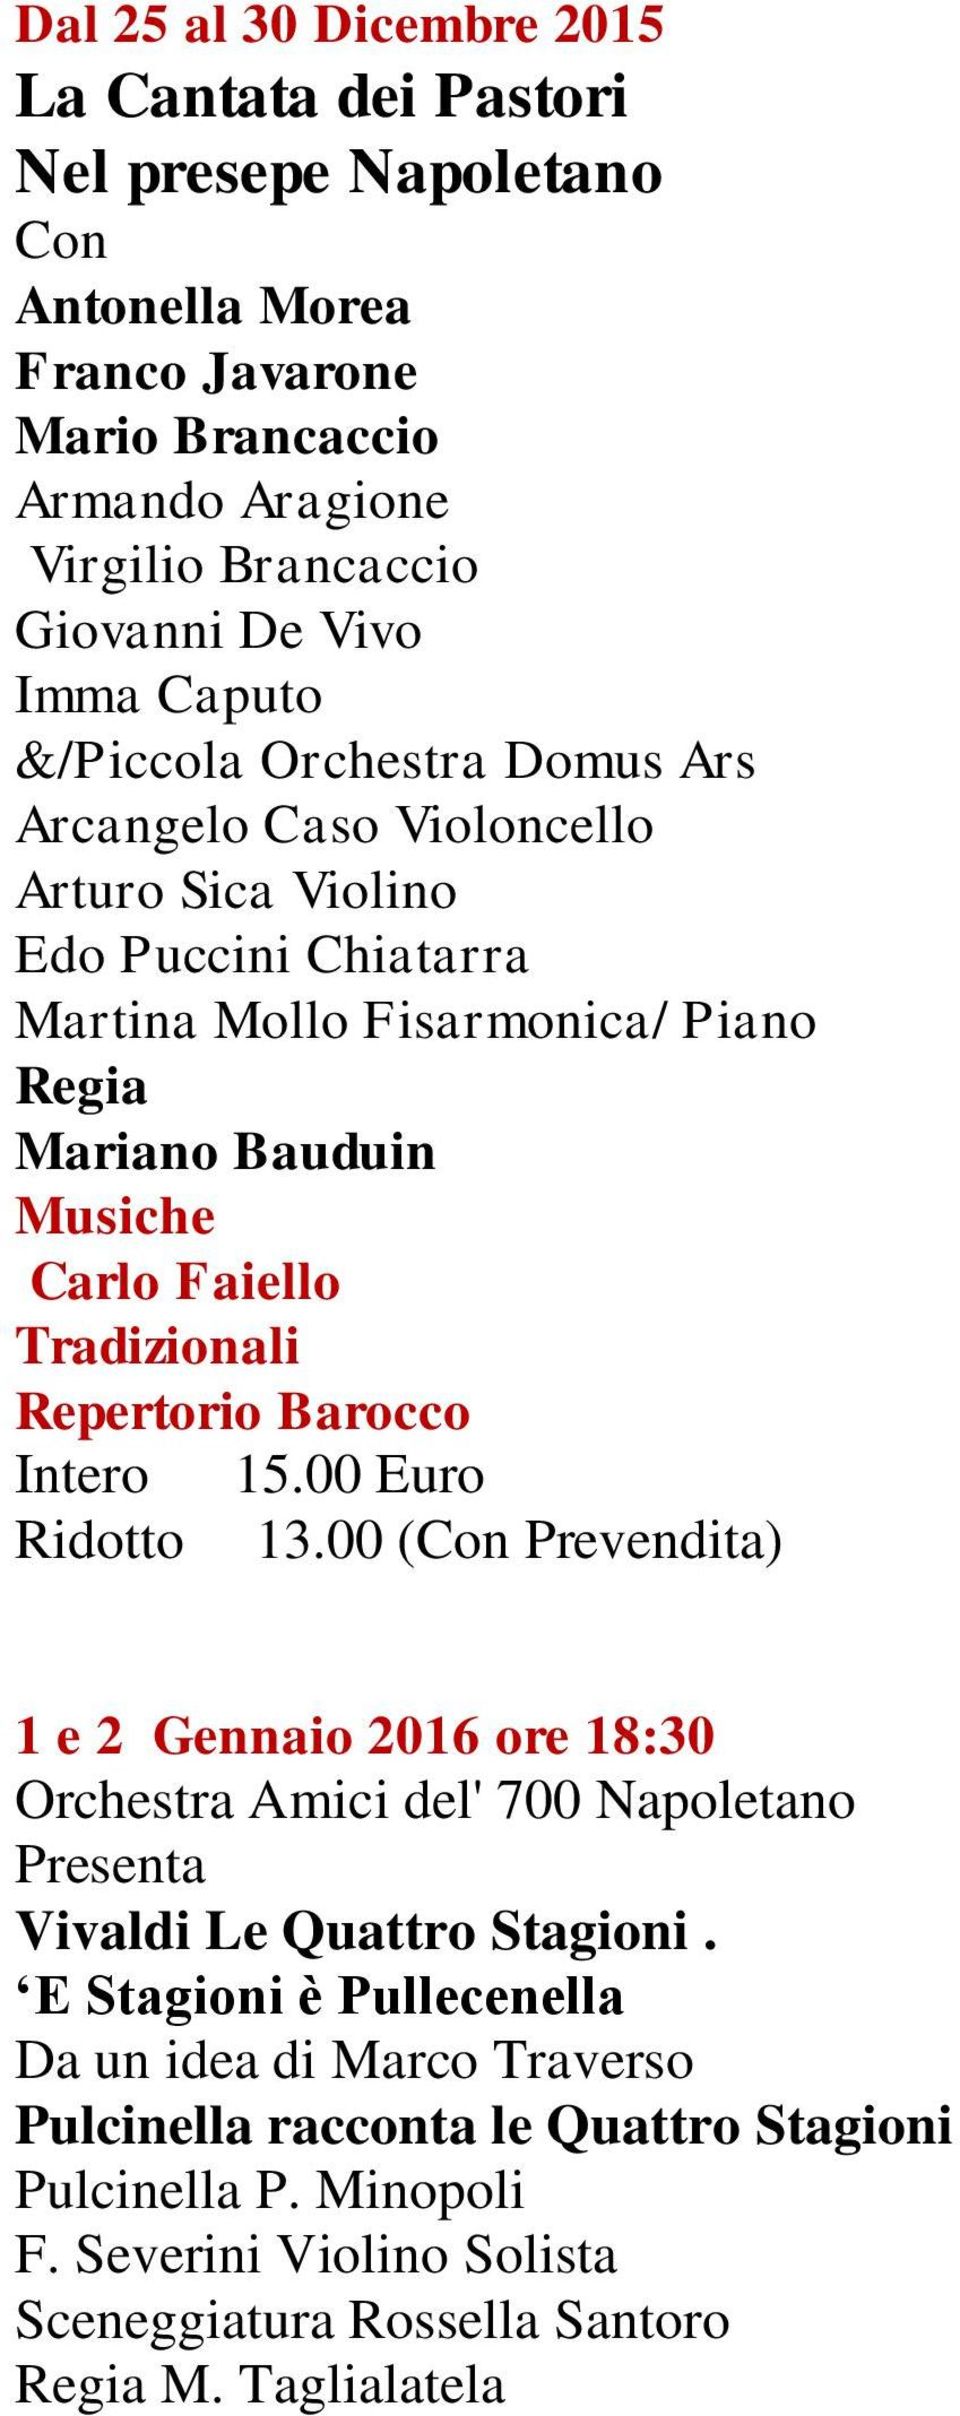 Tradizionali Repertorio Barocco Intero 15.00 Euro Ridotto 13.00 (Con Prevendita) 1 e 2 Gennaio 2016 ore 18:30 Orchestra Amici del' 700 Napoletano Vivaldi Le Quattro Stagioni.